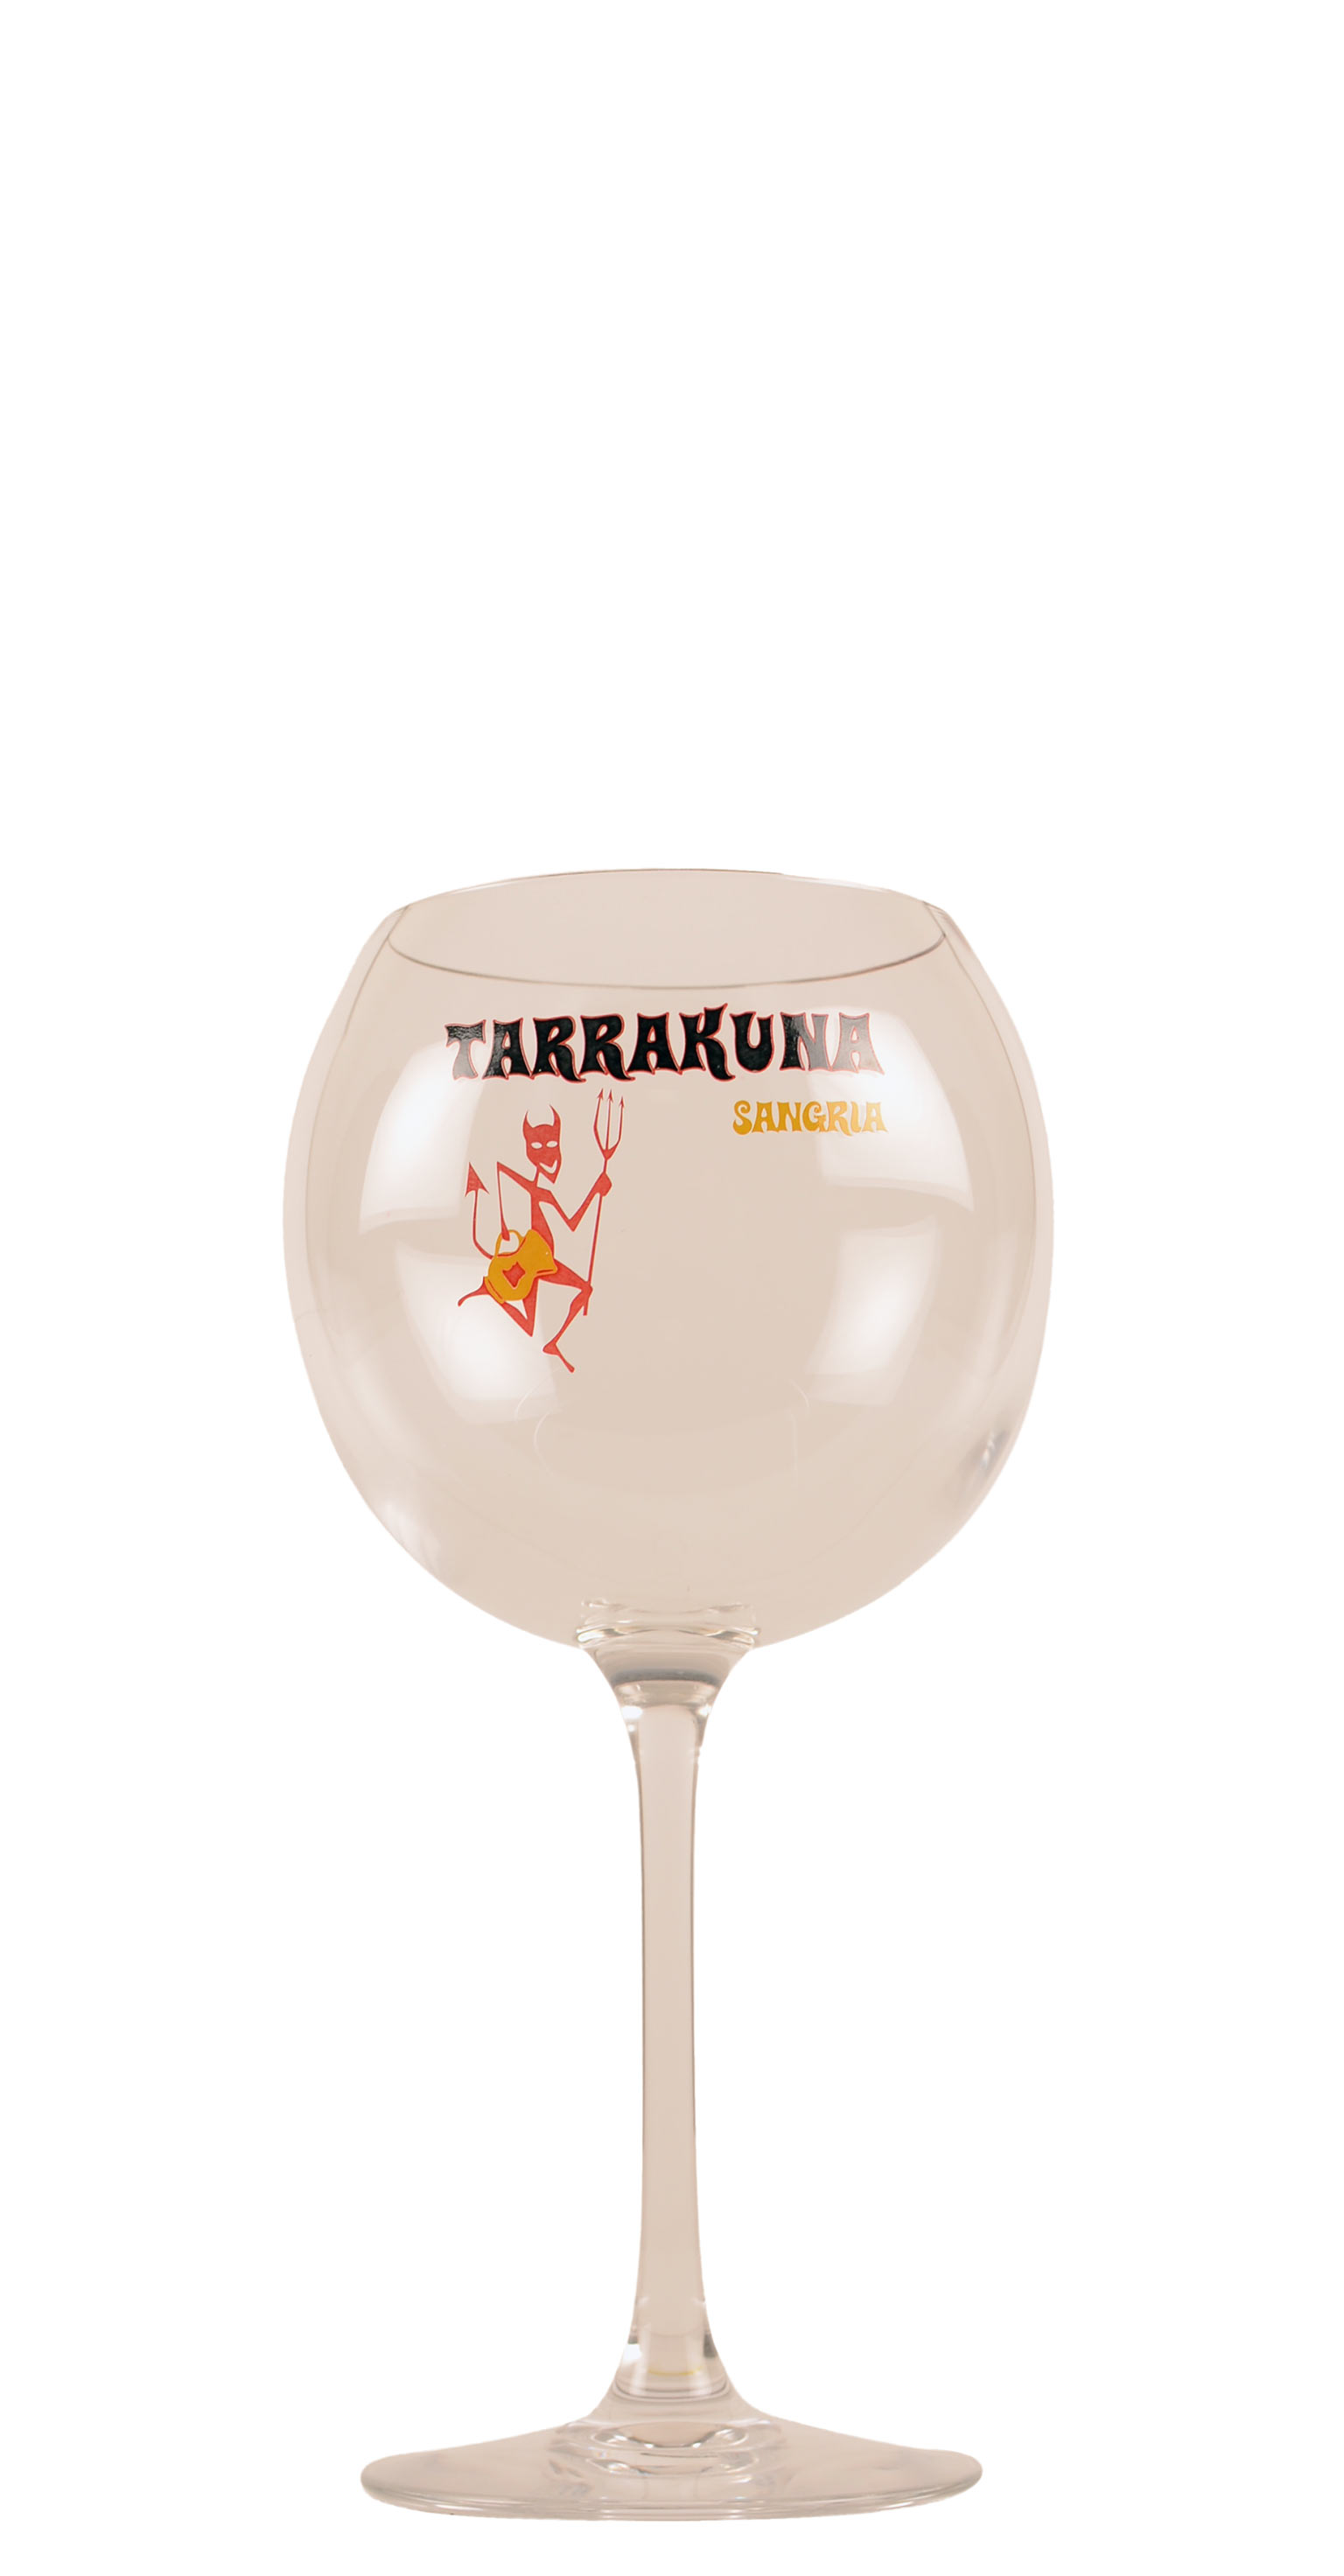 De andere dag Tien jaar Eerlijk Sangria - glas Cabernet Ballon - Bedrukt Tarrakuna 58 cl | Het Wijnhuis  Smaakshop BE